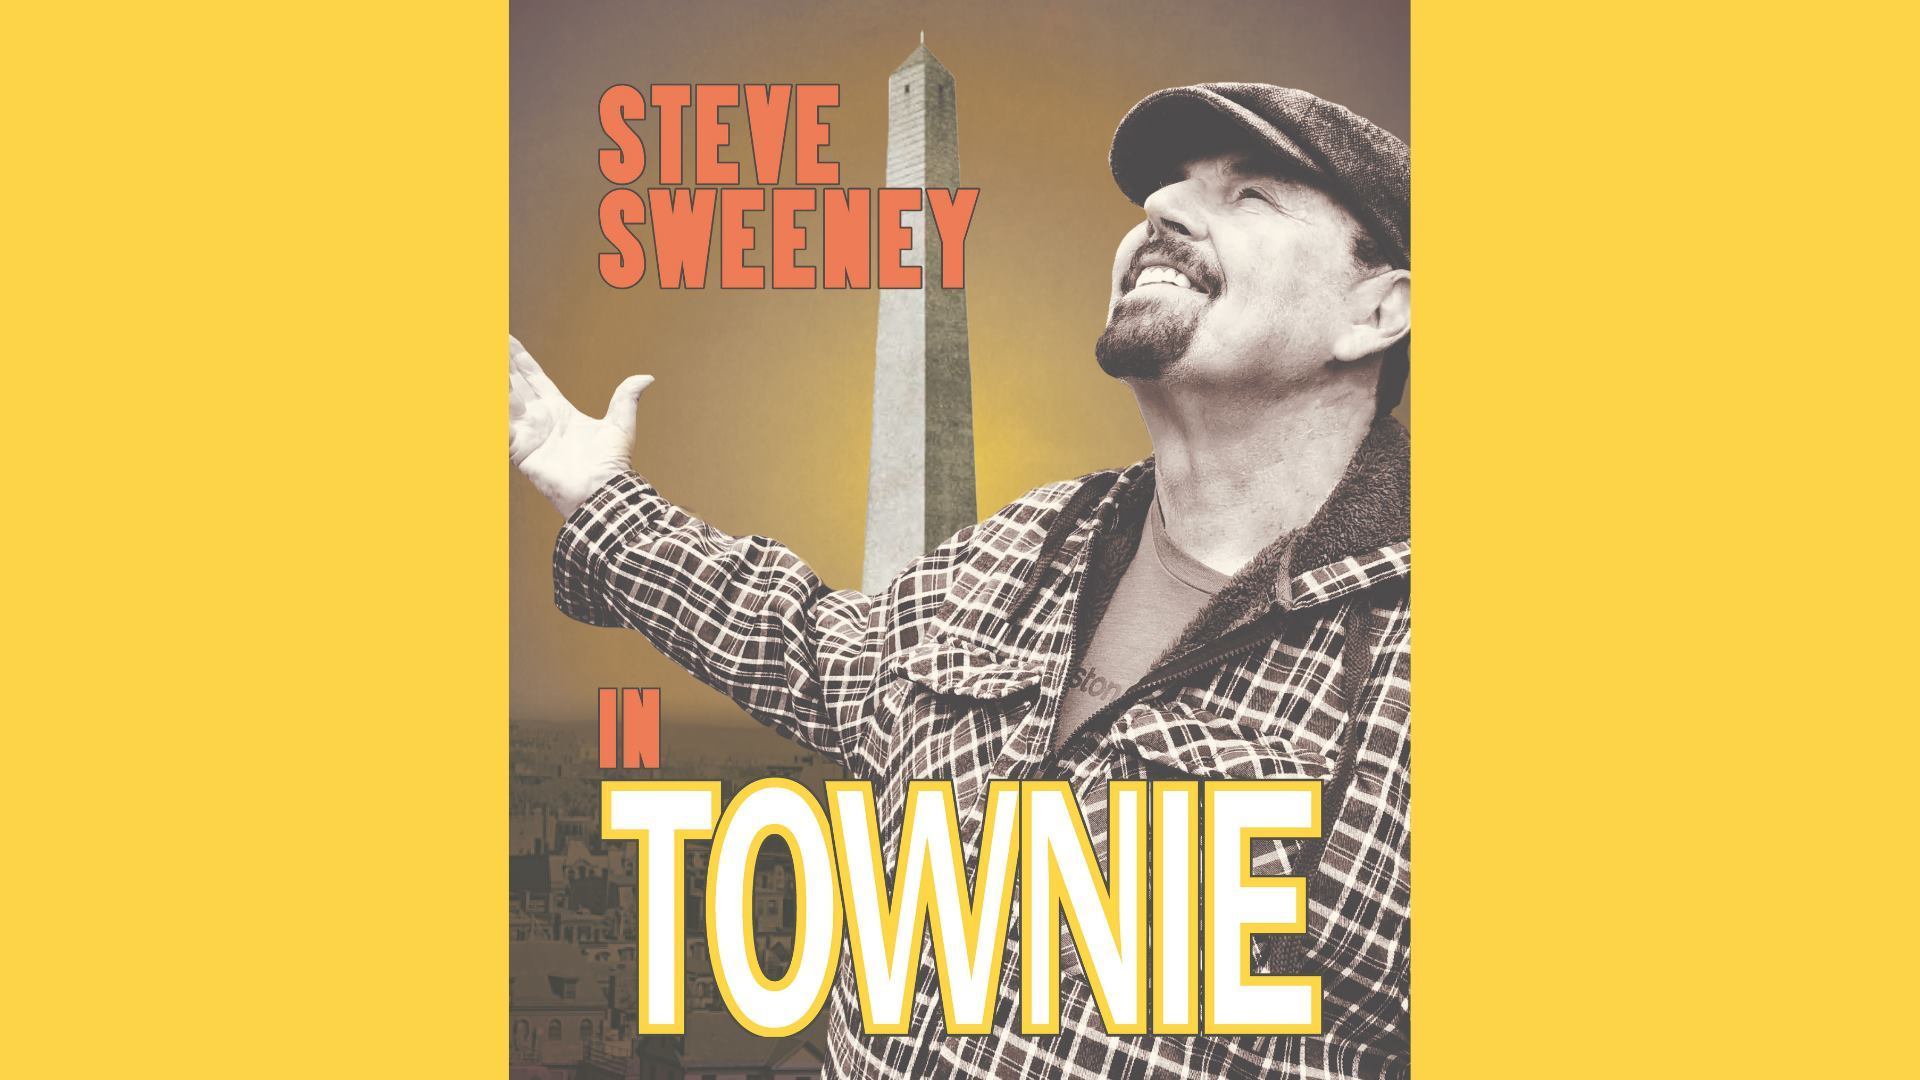 TOWNIE - Steve Sweeney, Somerville, Massachusetts, United States